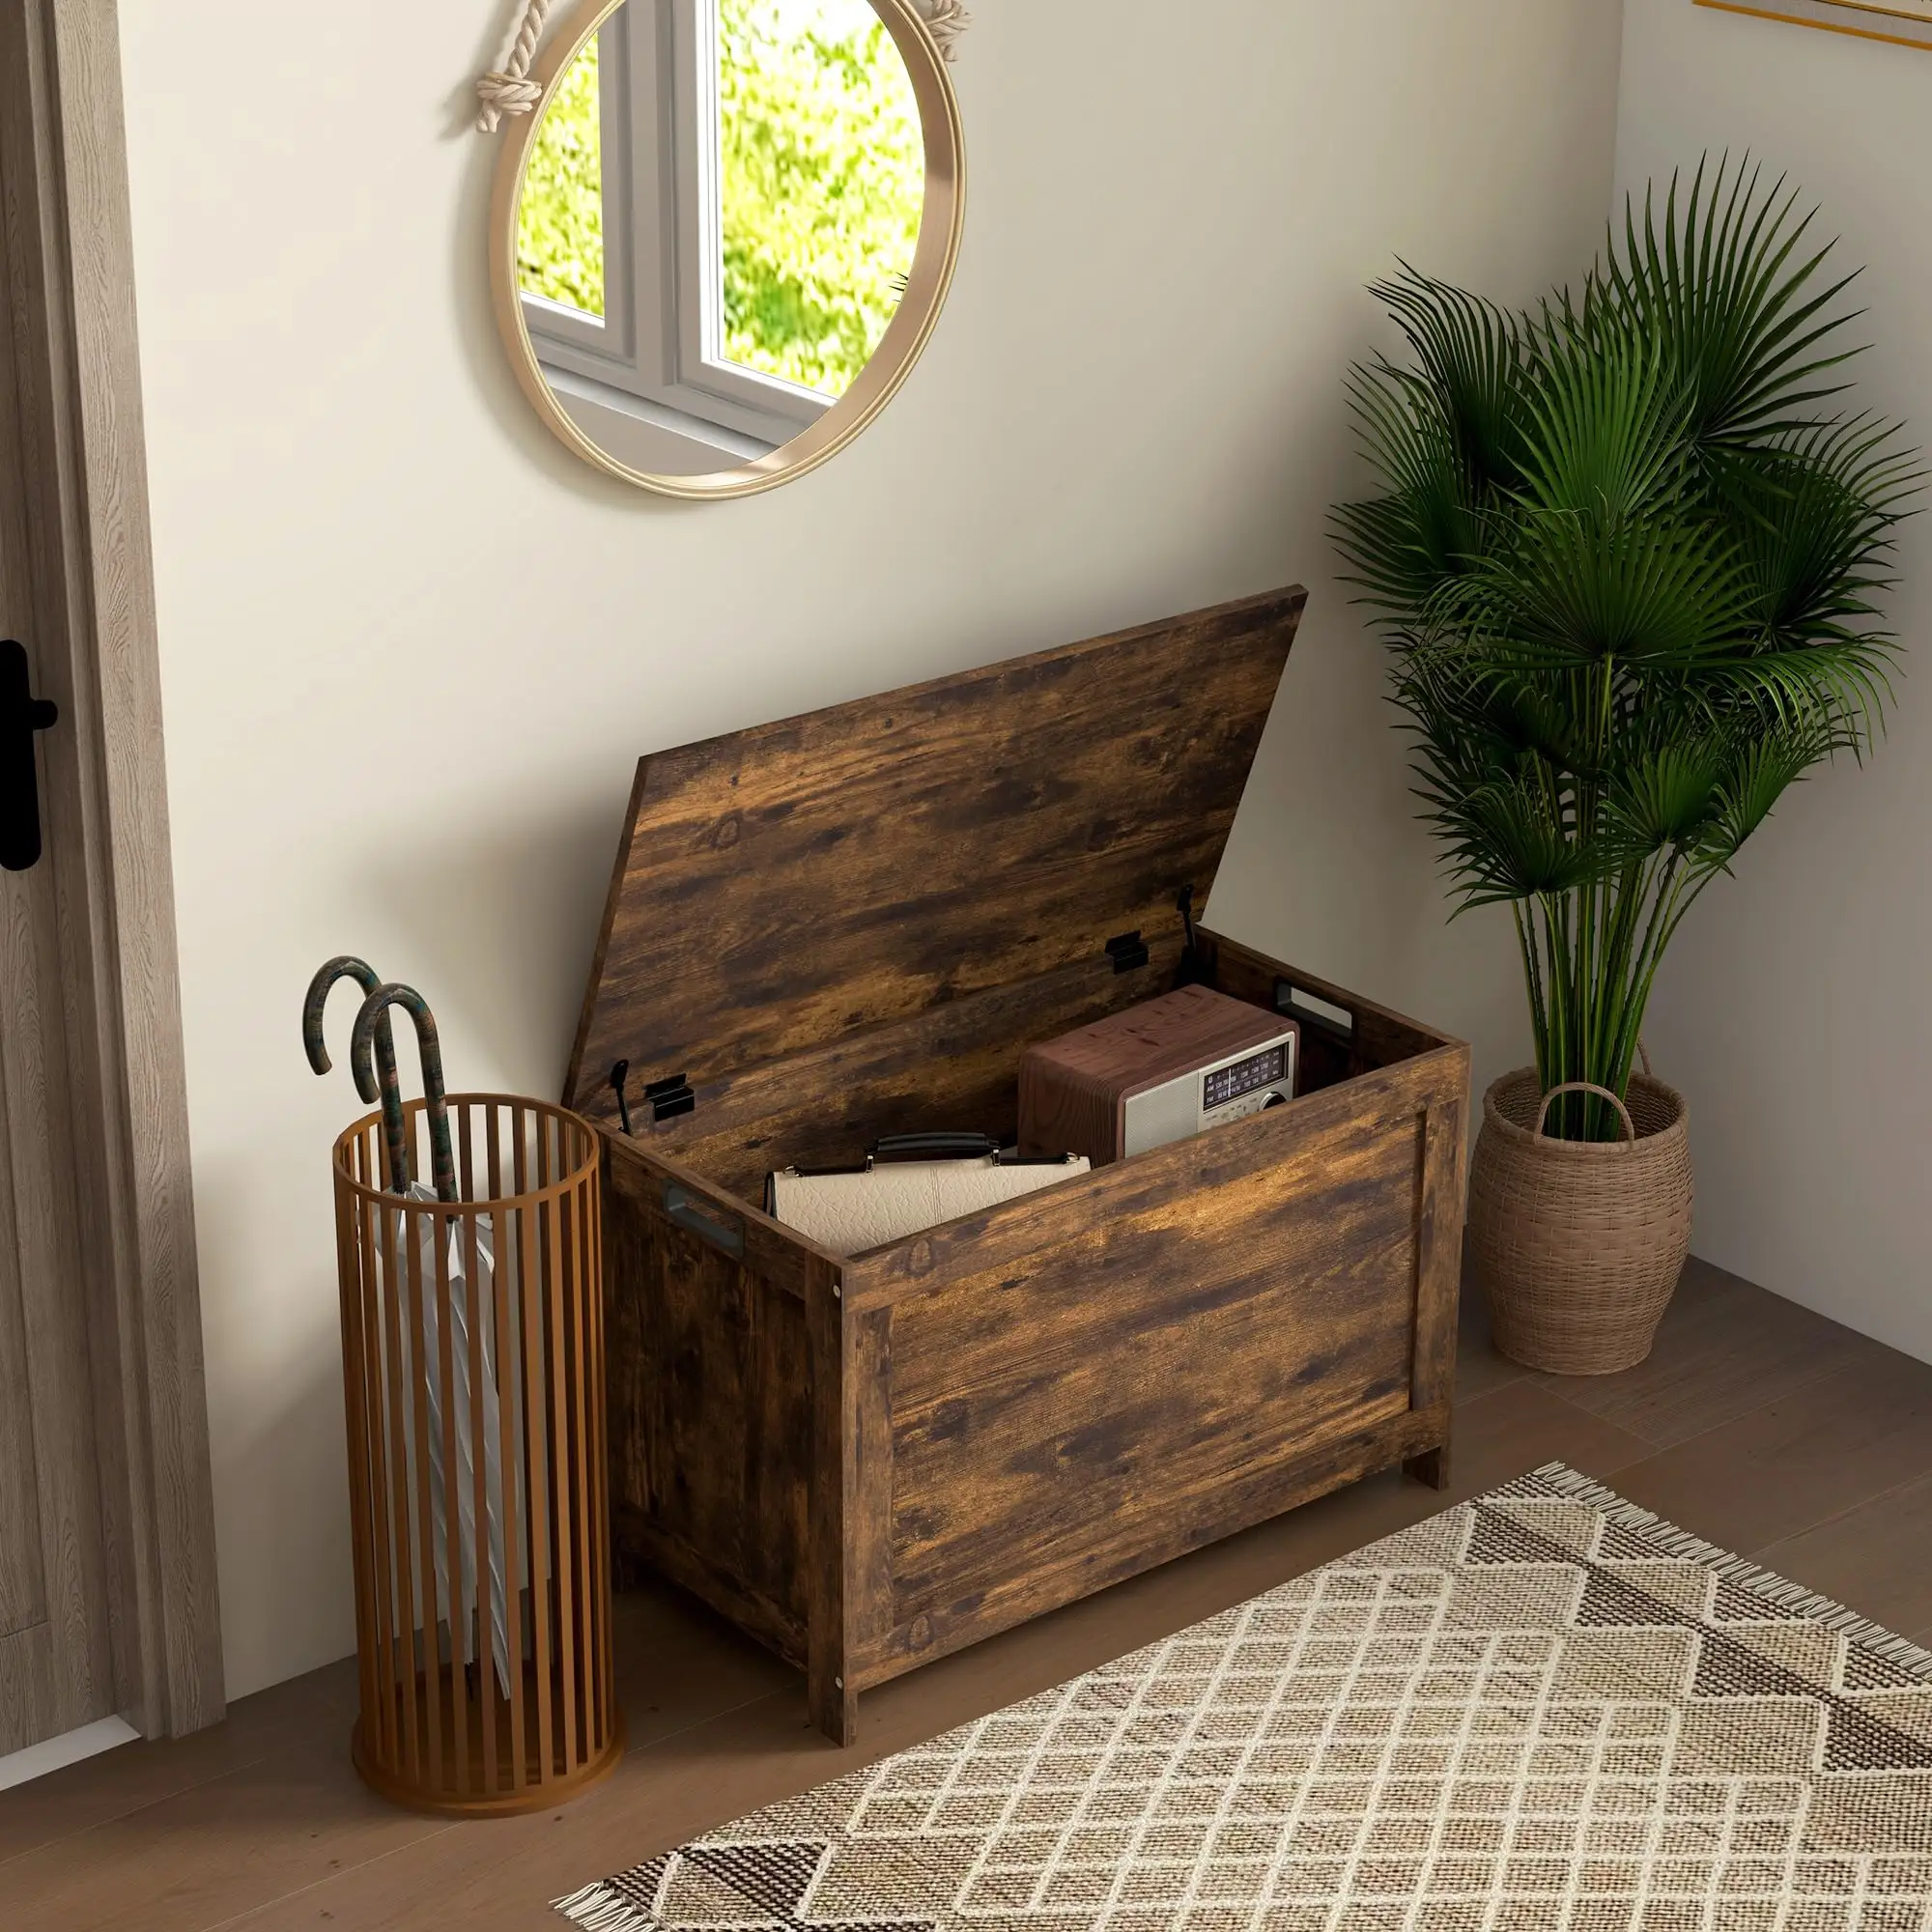 Bagasi penyimpanan Modern, untuk pintu masuk ruang tamu kotak kayu dengan 2 engsel keamanan dan pegangan potongan